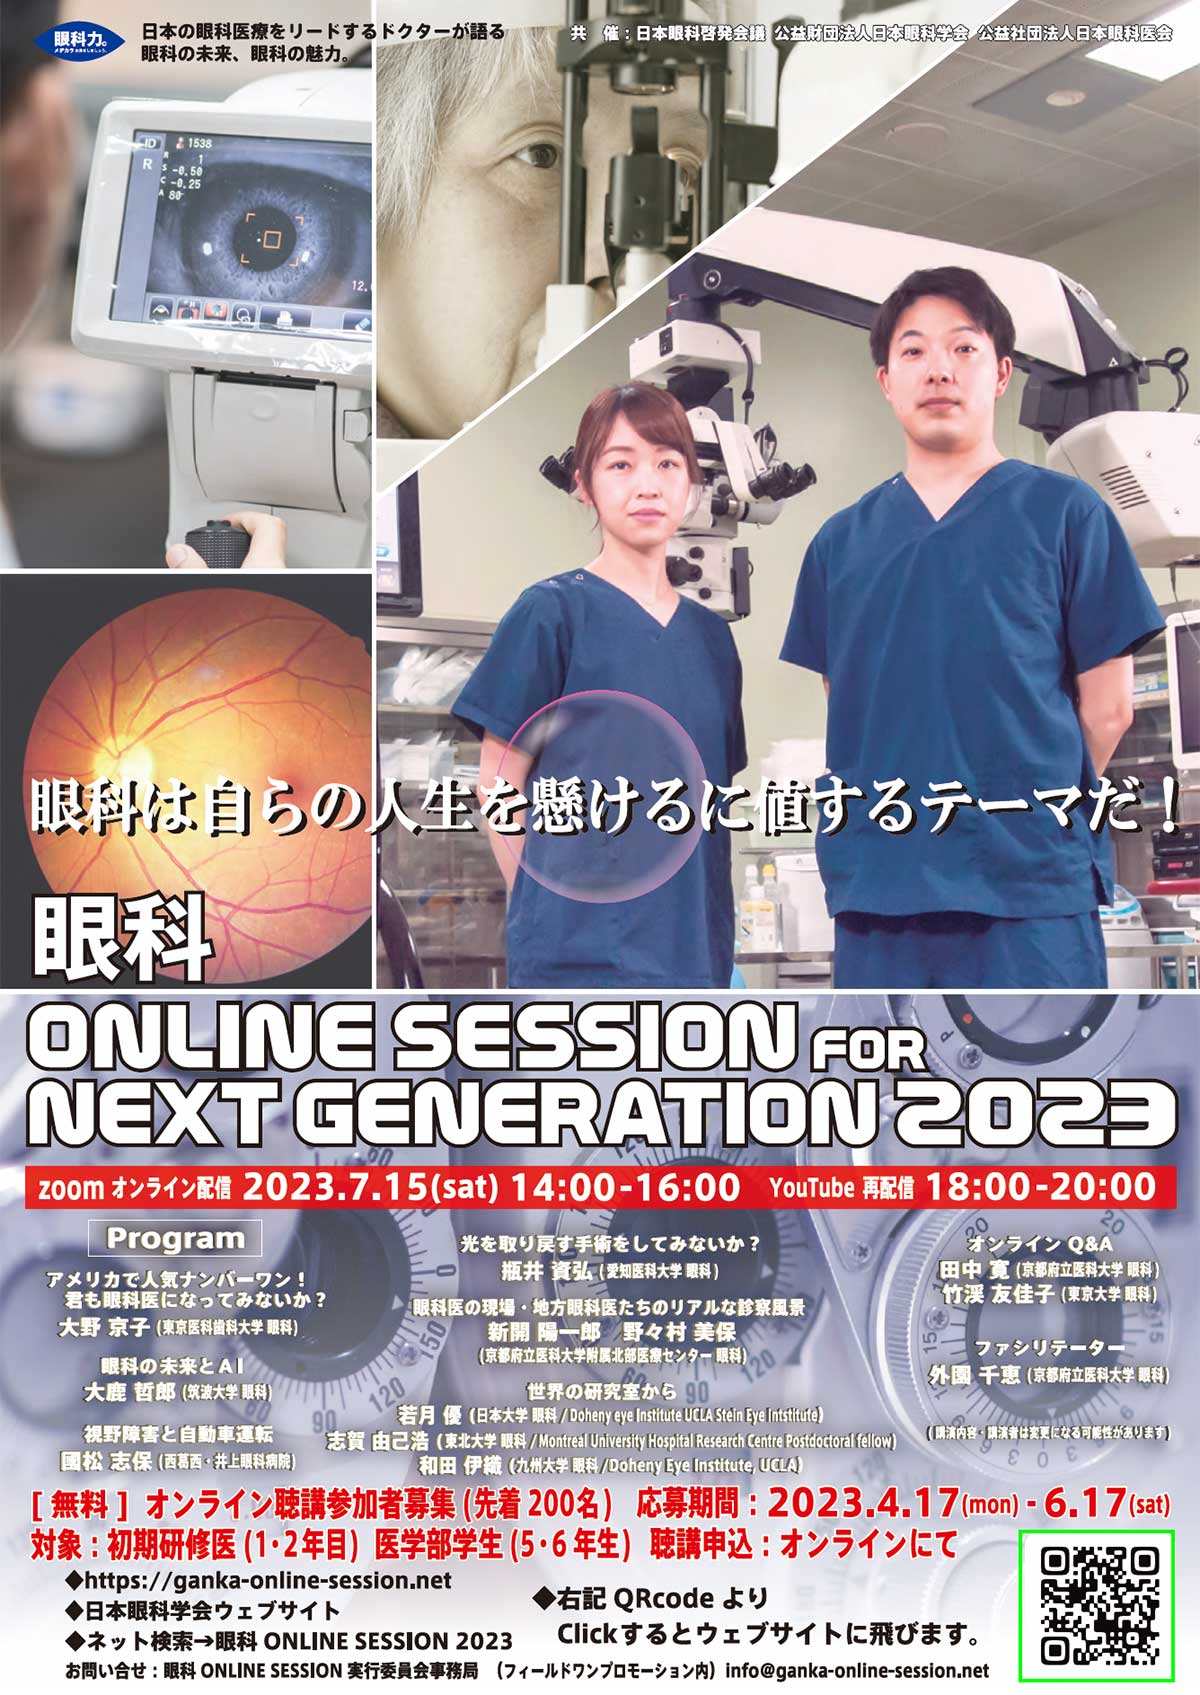 眼科 ONLINE SESSION FOR NEXT GENERATION 2023